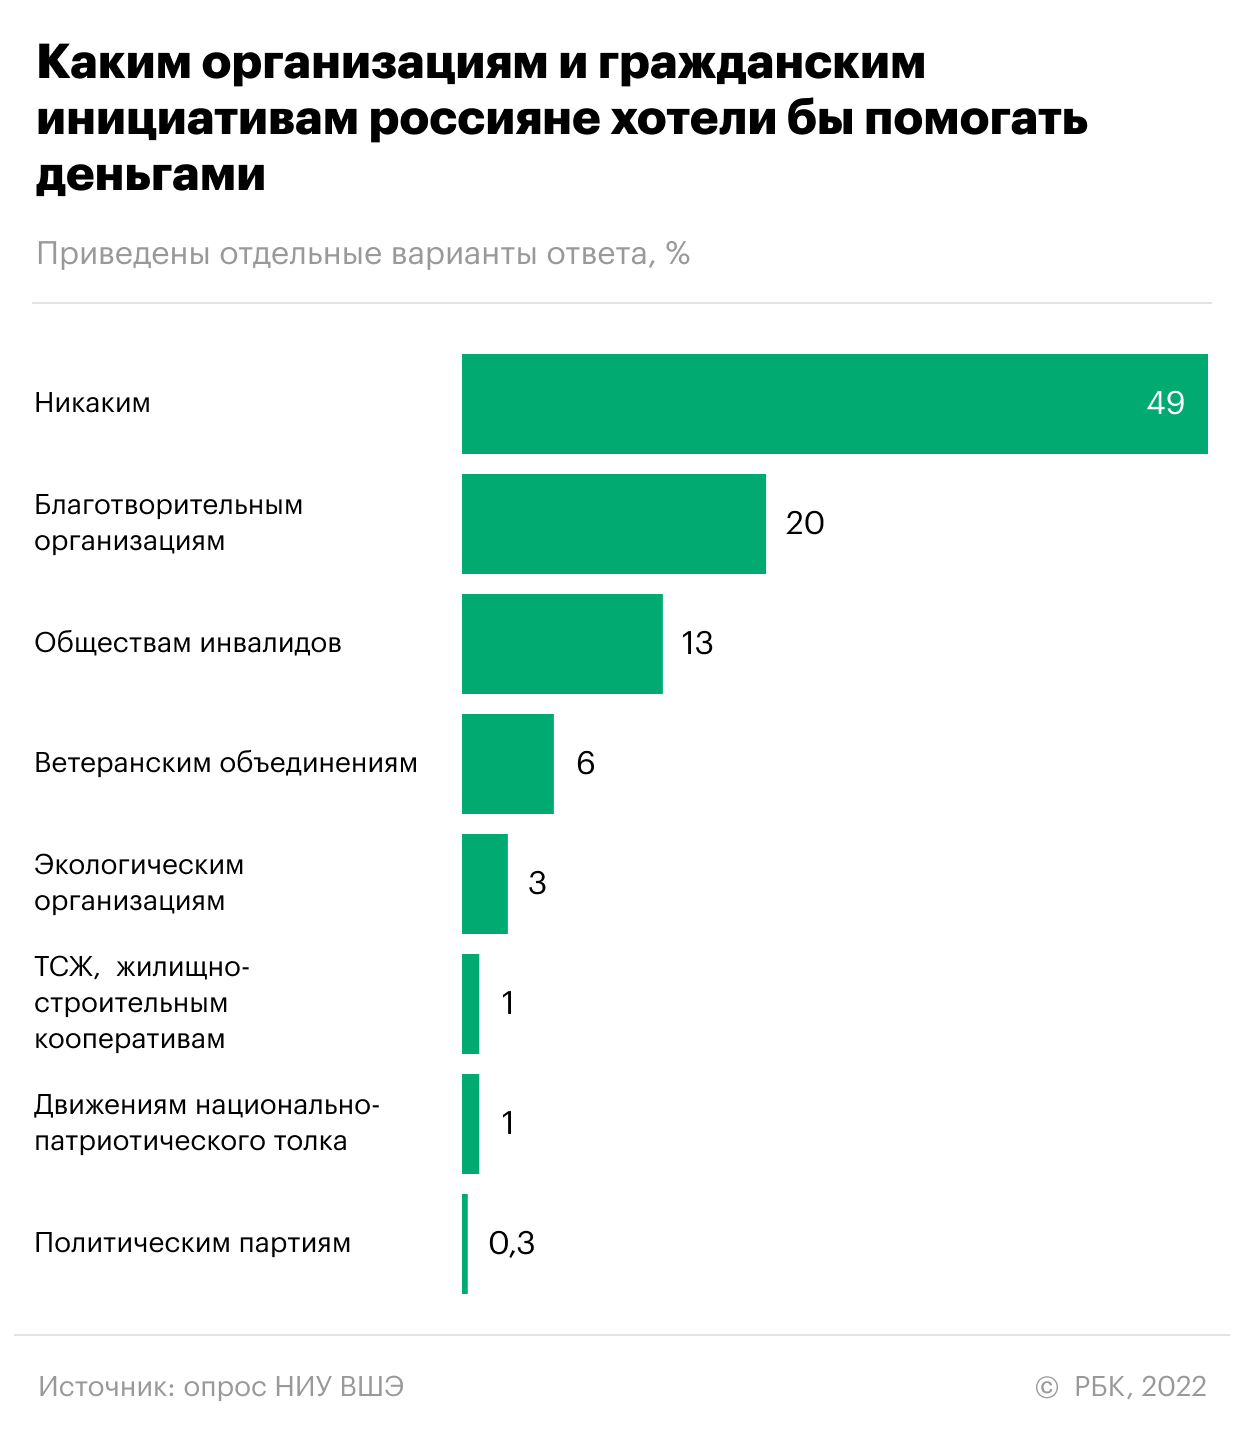 Больше трети россиян за последний год ни разу не сделали пожертвование